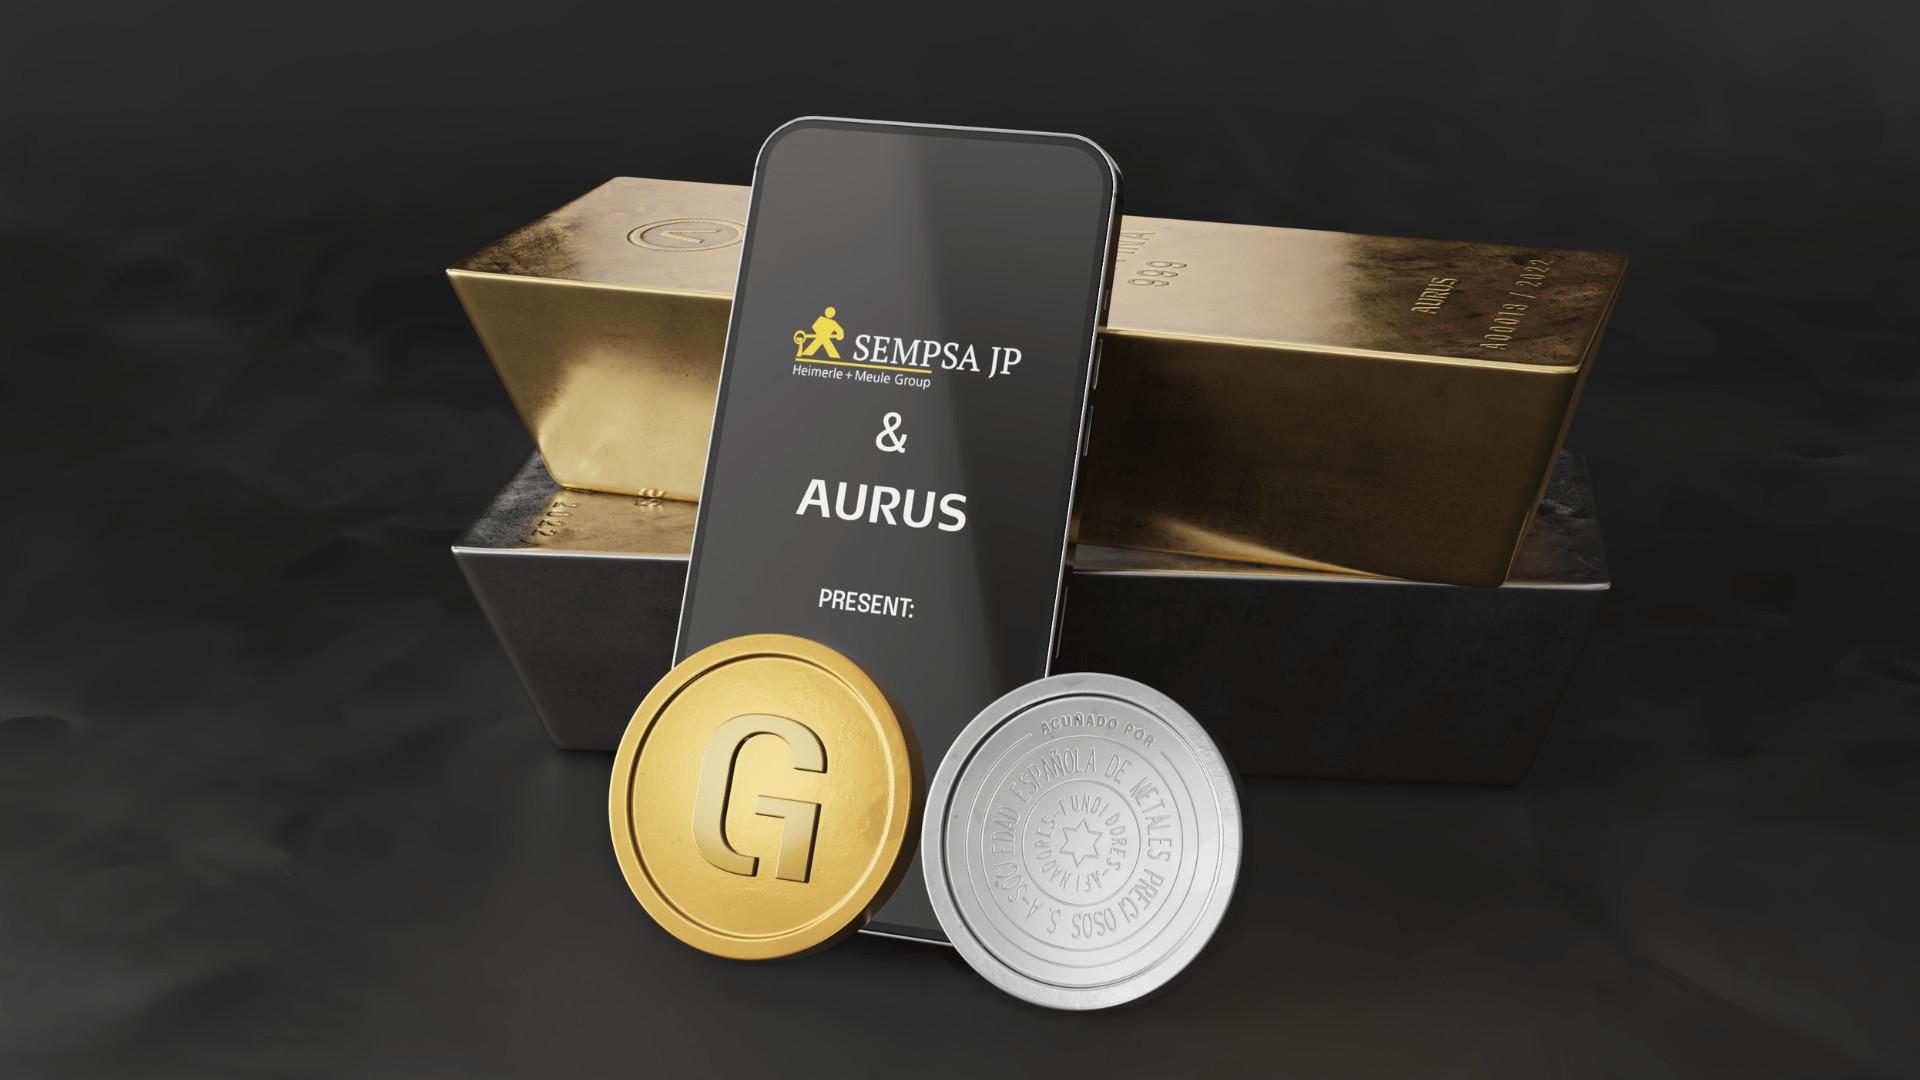 SEMPSA JP, LBMA Good Delivery Refinery lance de l'or et de l'argent tokenisés sur la Blockchain en partenariat avec Aurus - Blog CoinCheckup